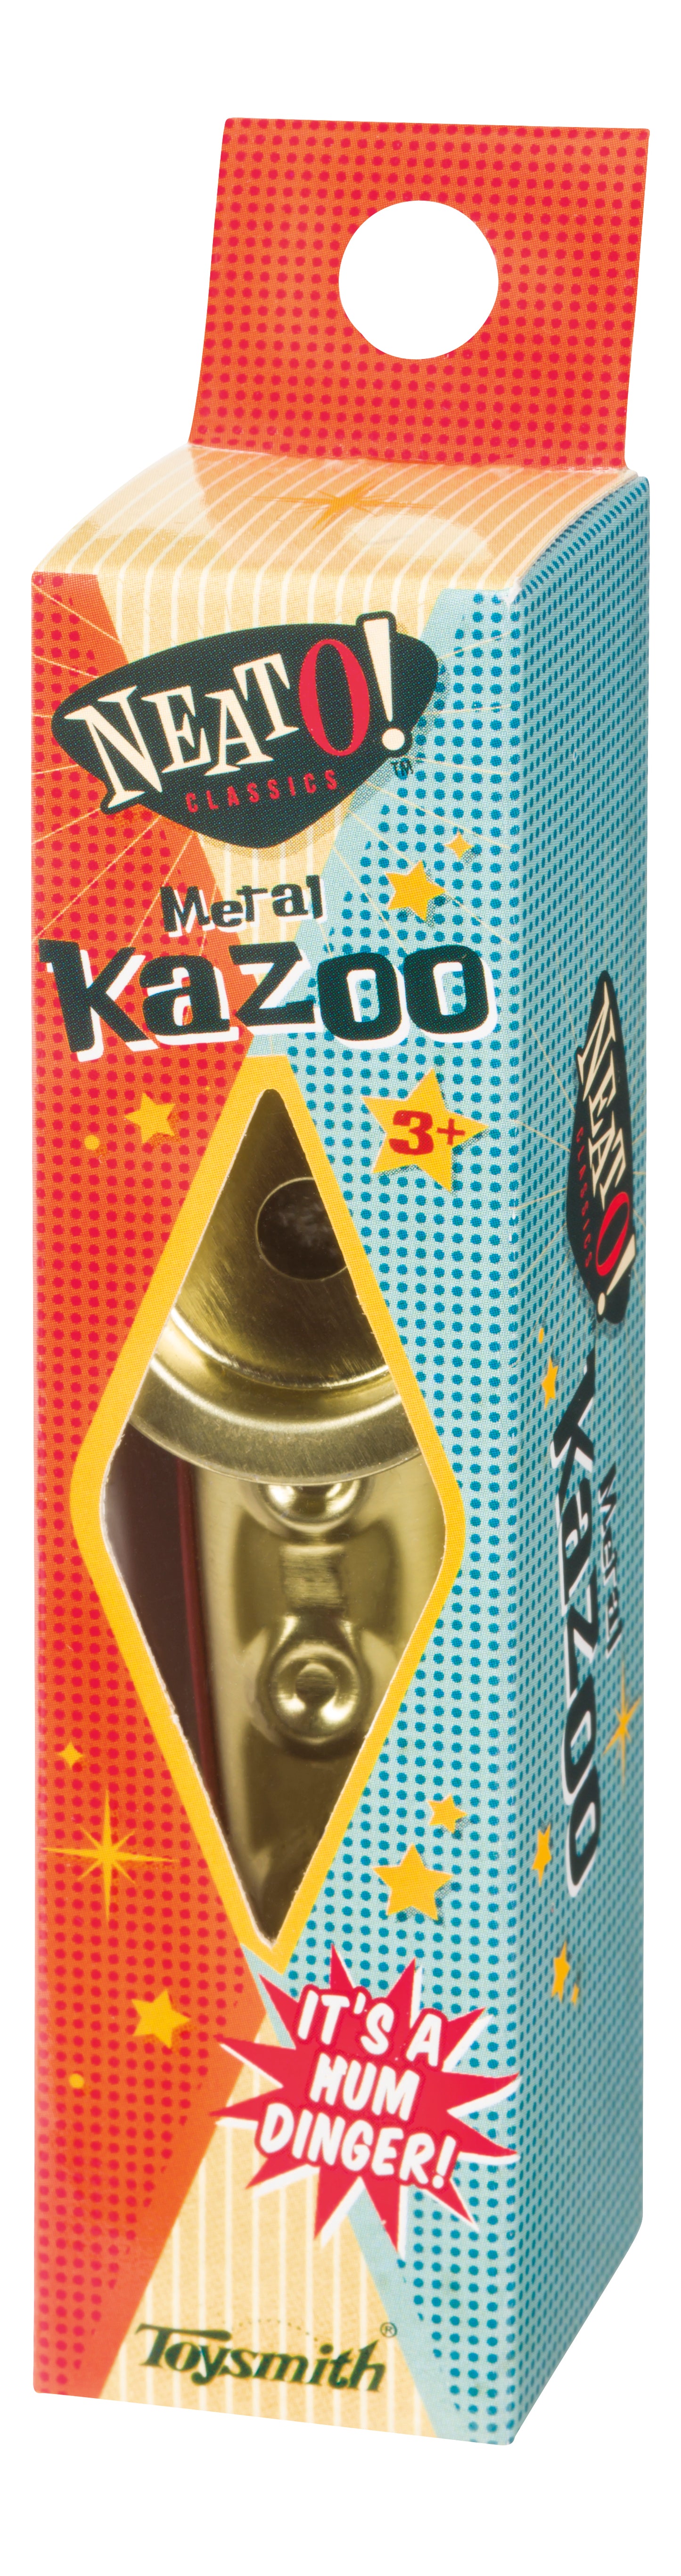 Neato! Metal Kazoo